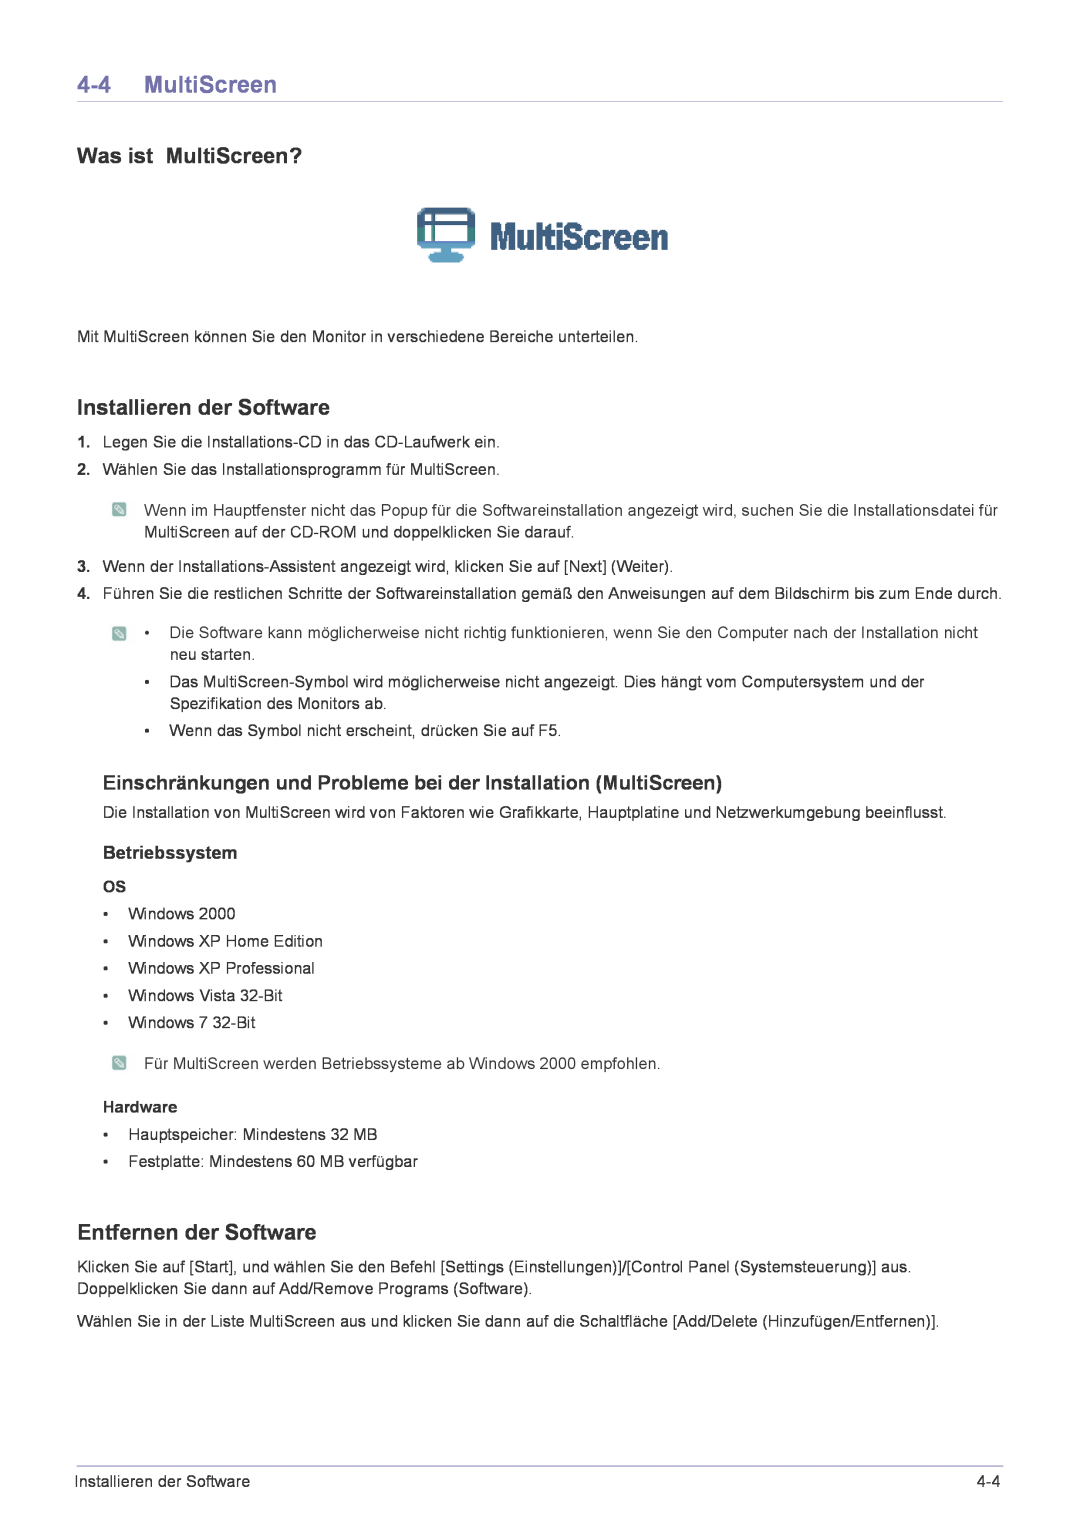 Samsung LS22CBKMBV/EN manual Was ist MultiScreen?, Installieren der Software, Entfernen der Software, Betriebssystem 